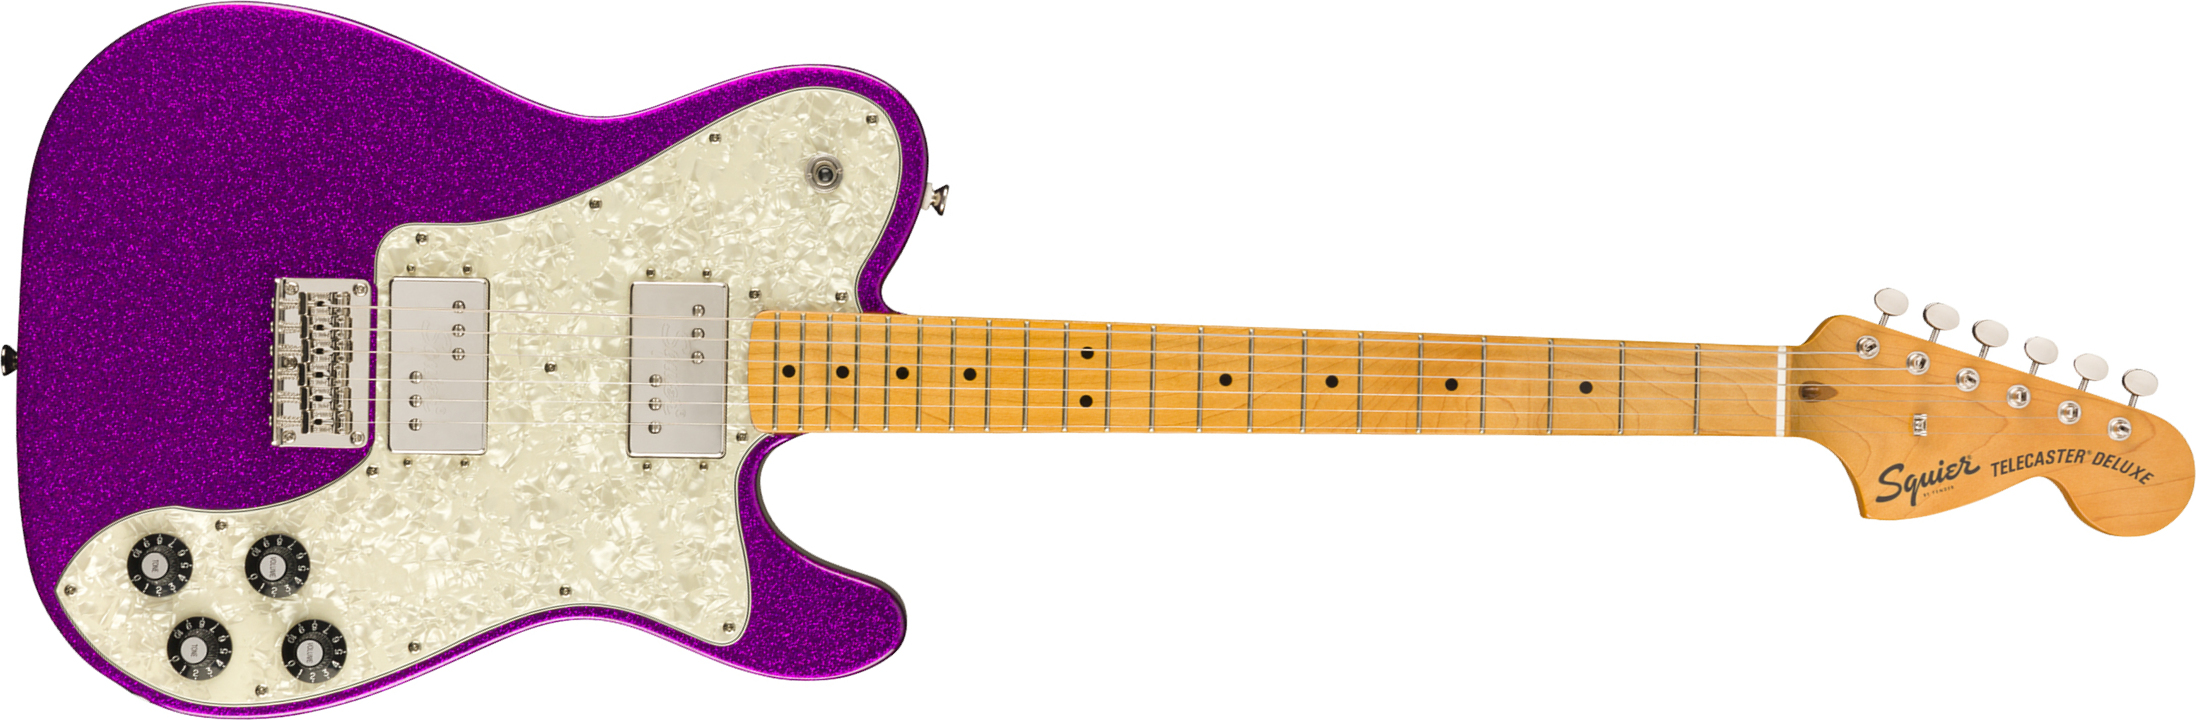 Squier Tele Deluxe Classic Vibe 70 Fsr Ltd 2020 Hh Htmn - Purple Sparkle - Tel shape electric guitar - Main picture